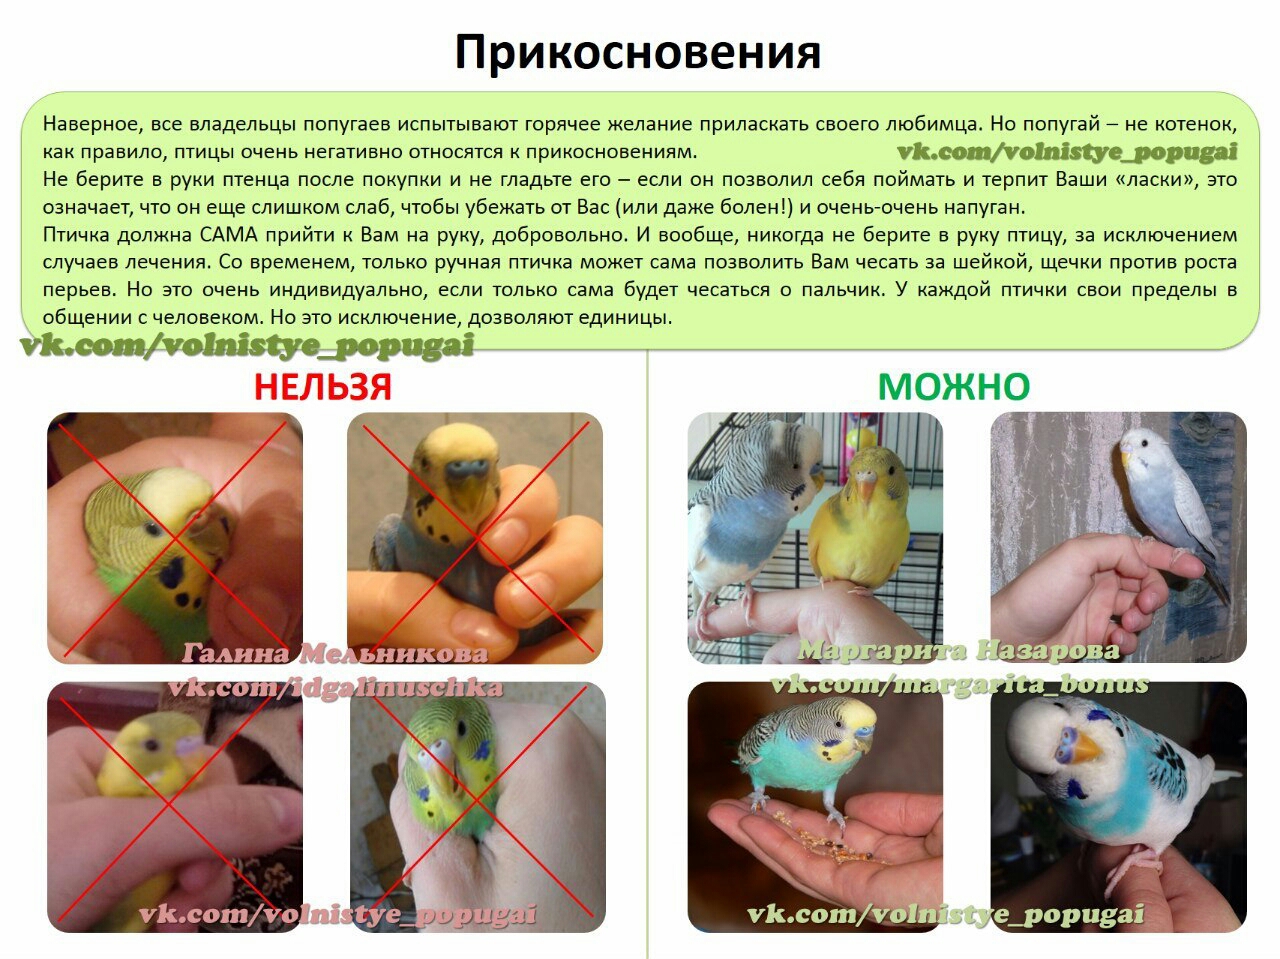 Как приручить ожерелового попугая к рукам: процесс приручения взрослого попугая в 5 месяцев, приручение за 30 минут или 3 часа